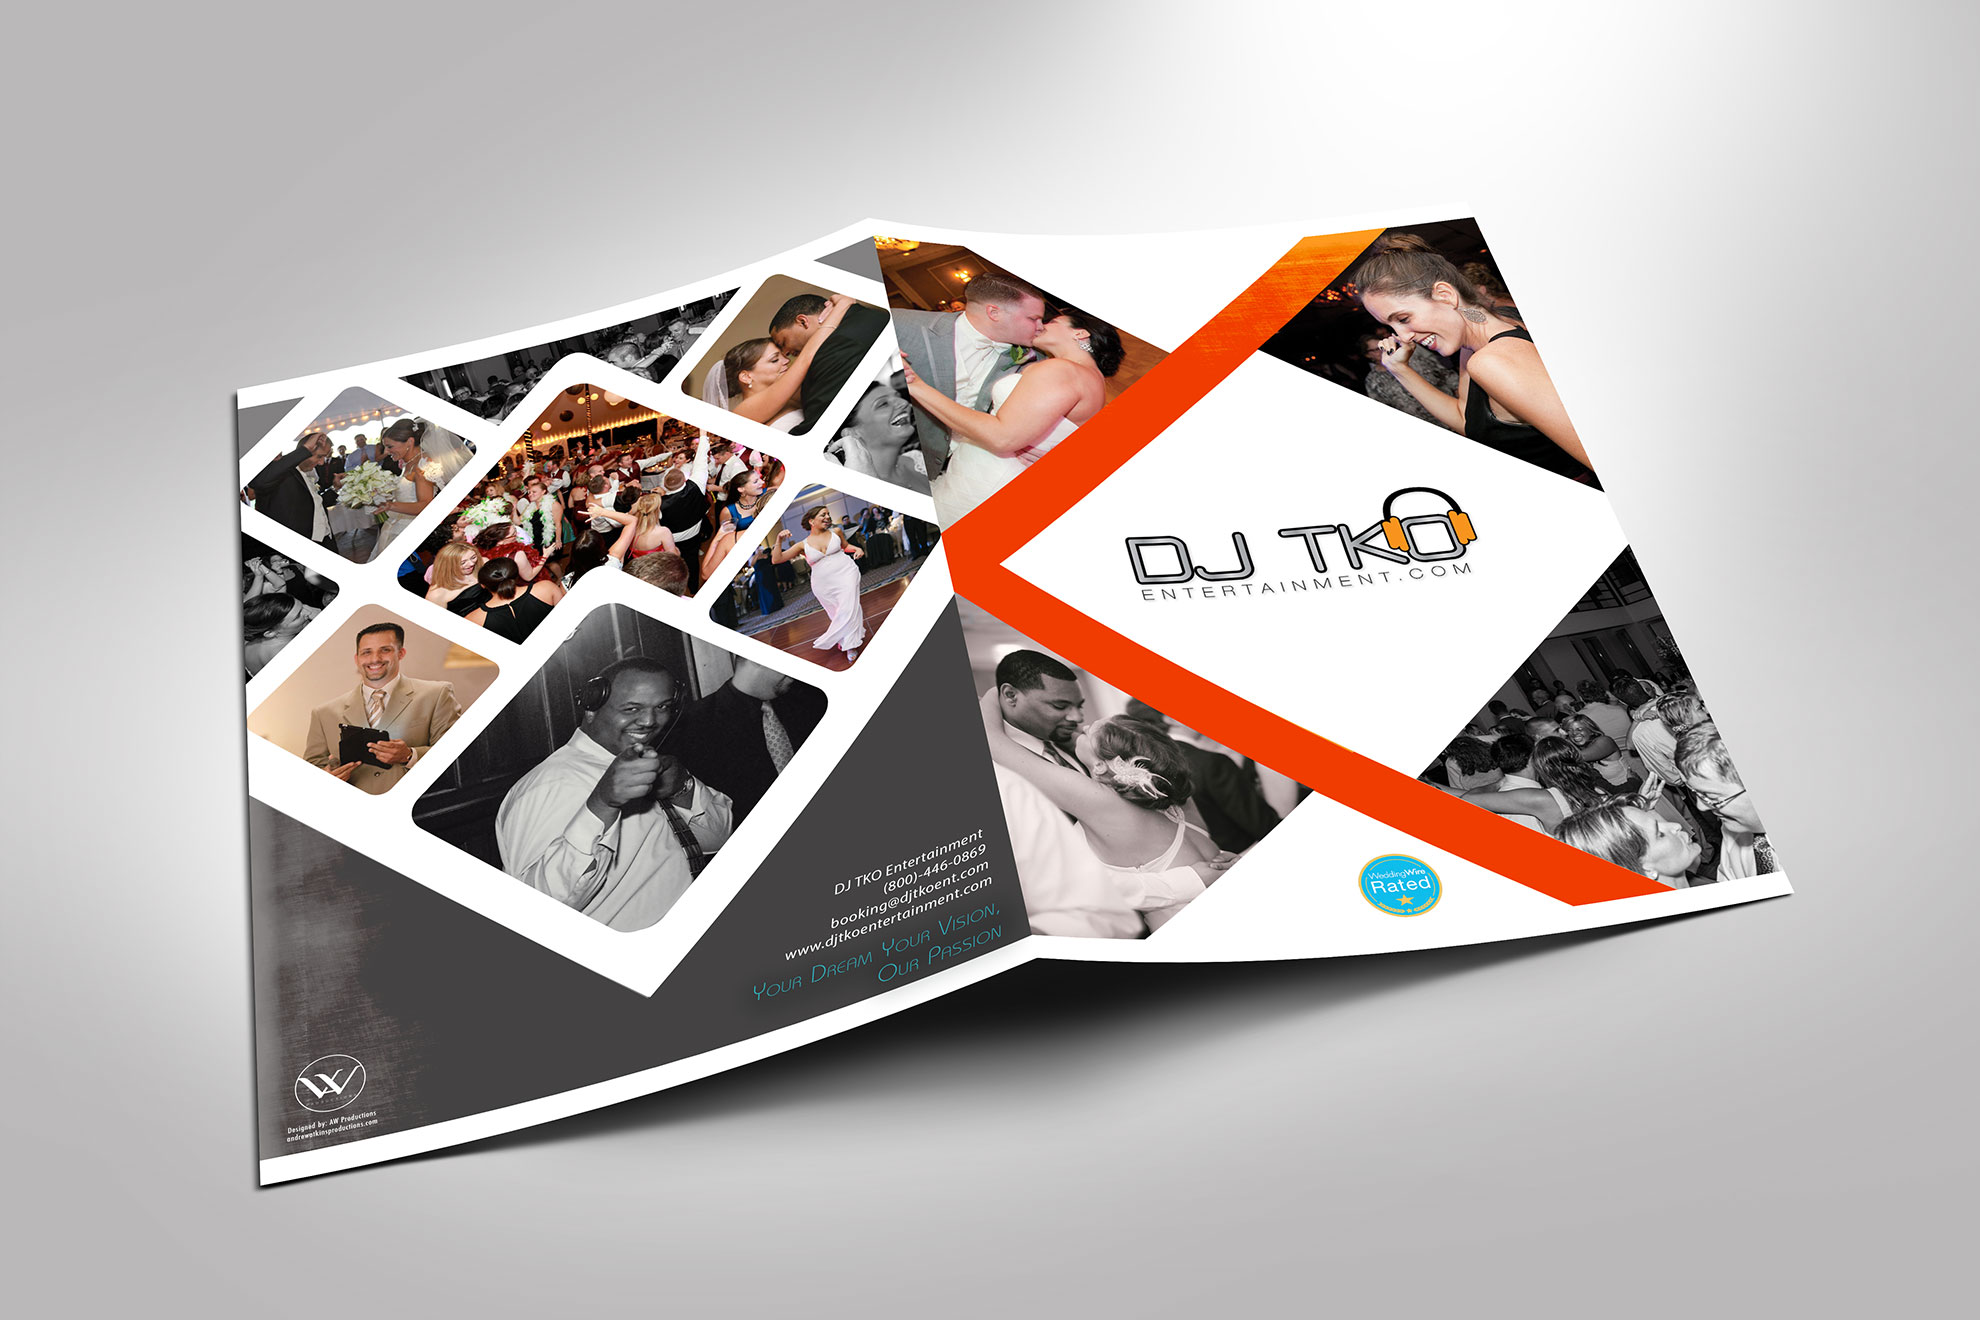 DJ TKO Promotional Display